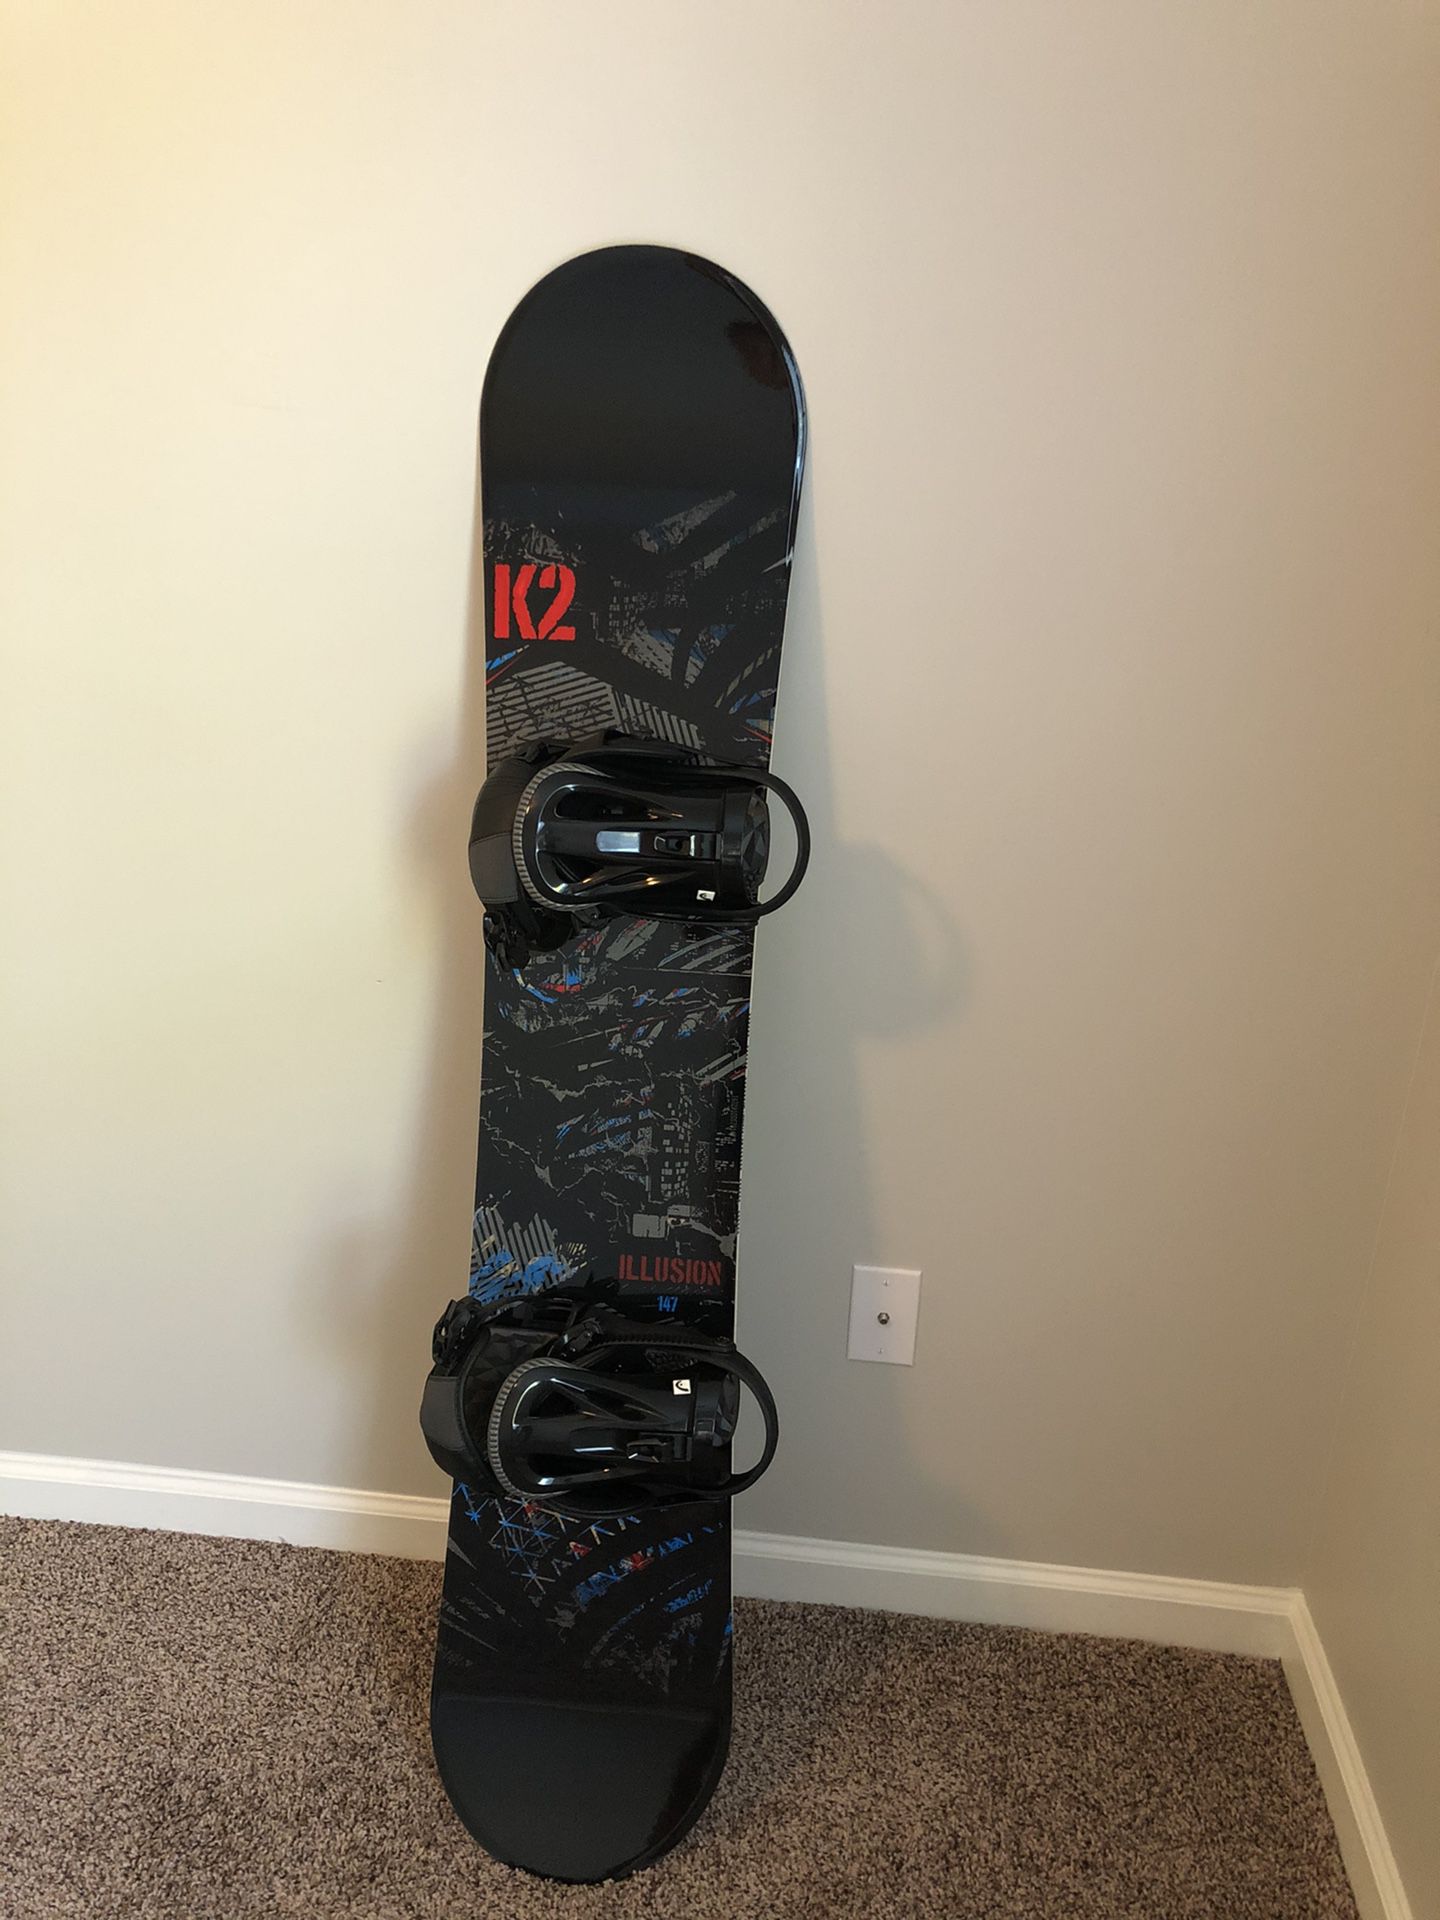 K2 snowboard 147, bindings and bag